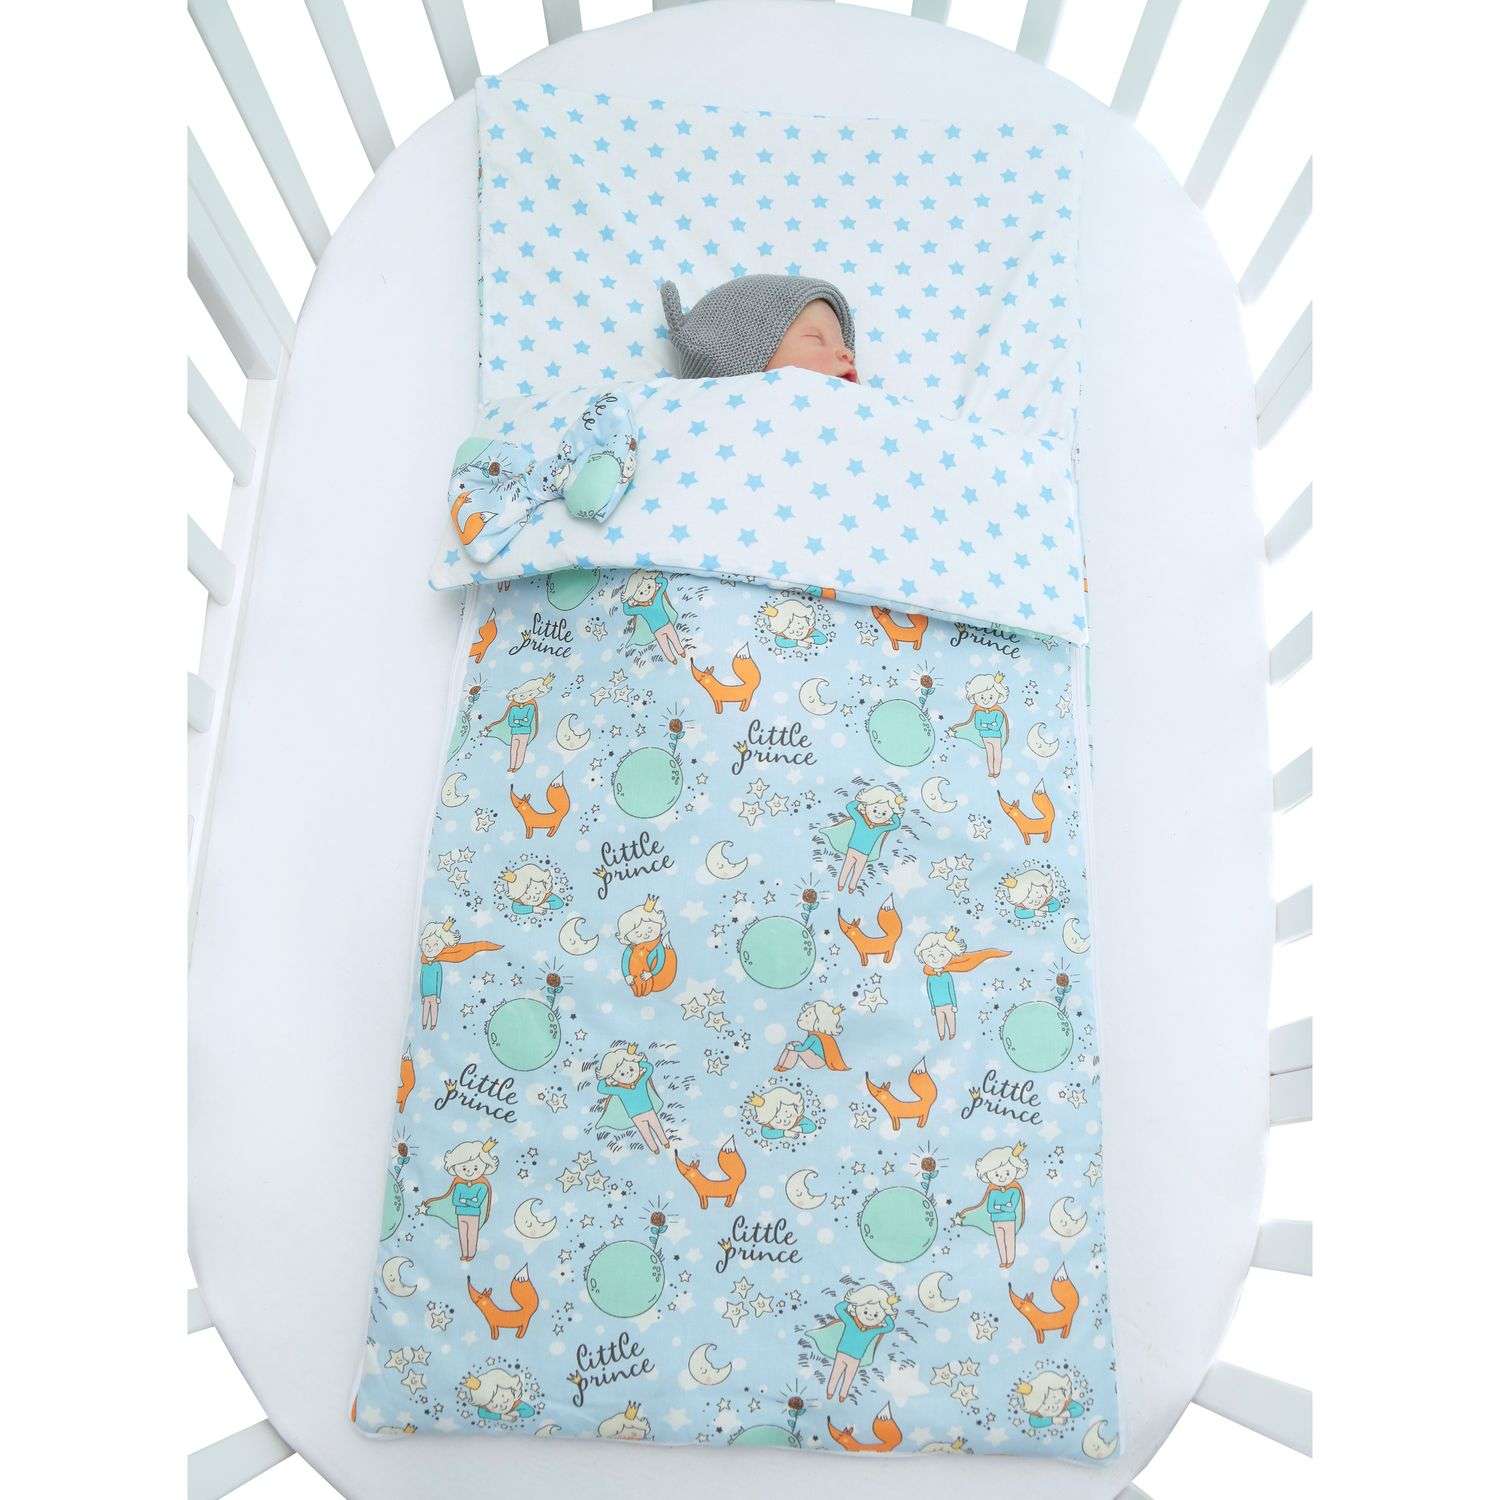 Одеяло-спальный мешок Amarobaby Magic Sleep Маленький принц AMARO-32MS-MPr - фото 5